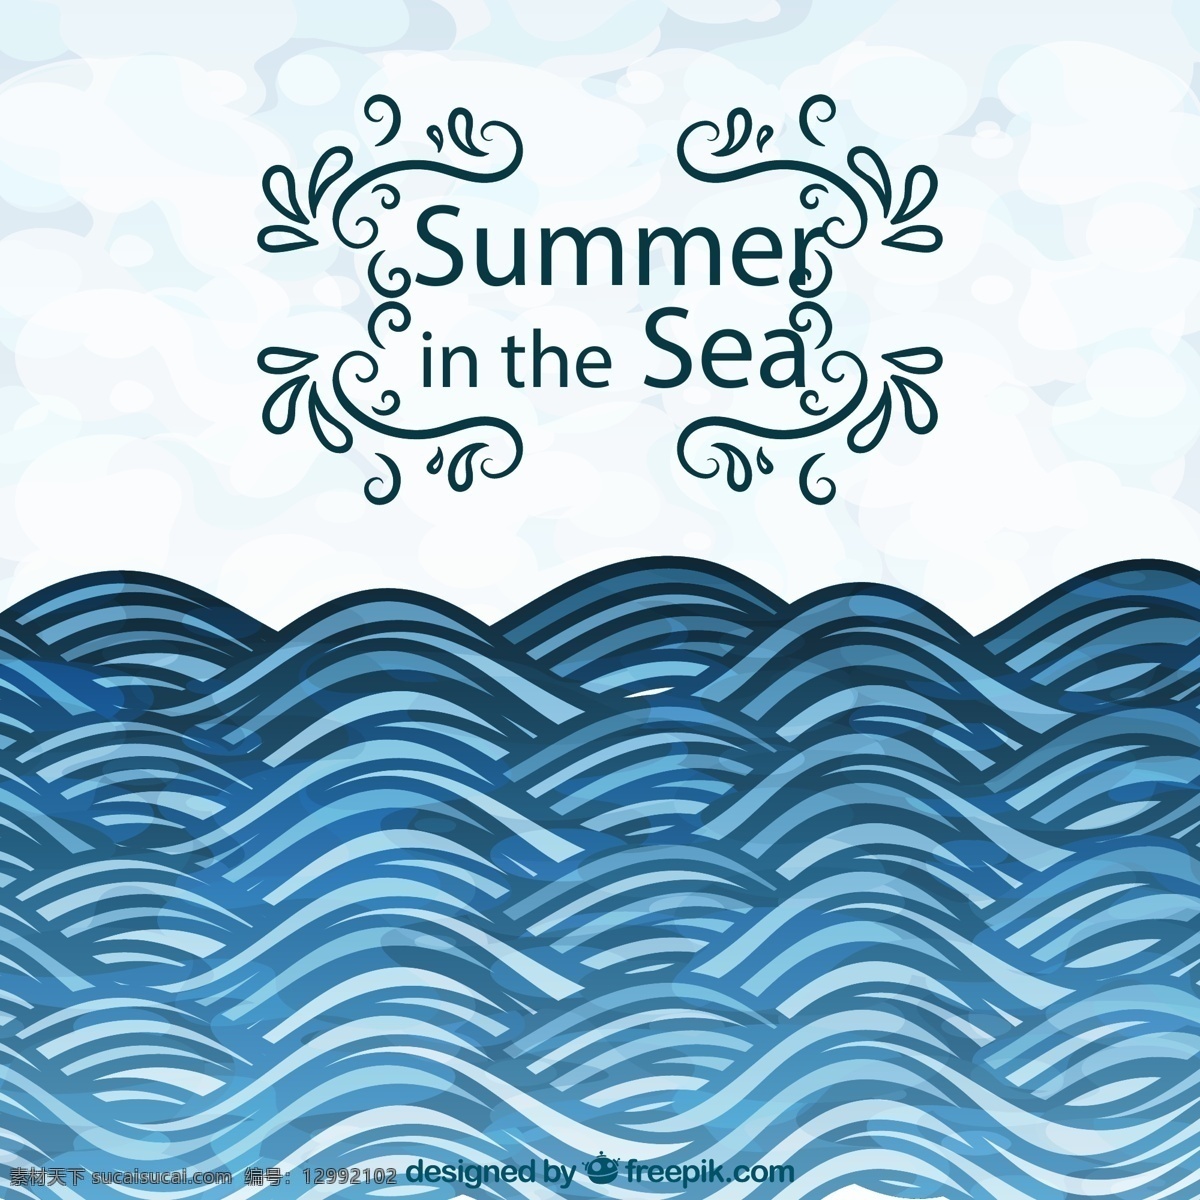 夏季 大海 蓝色 海浪 手绘 矢量图 格式 源文件 矢量 高清图片